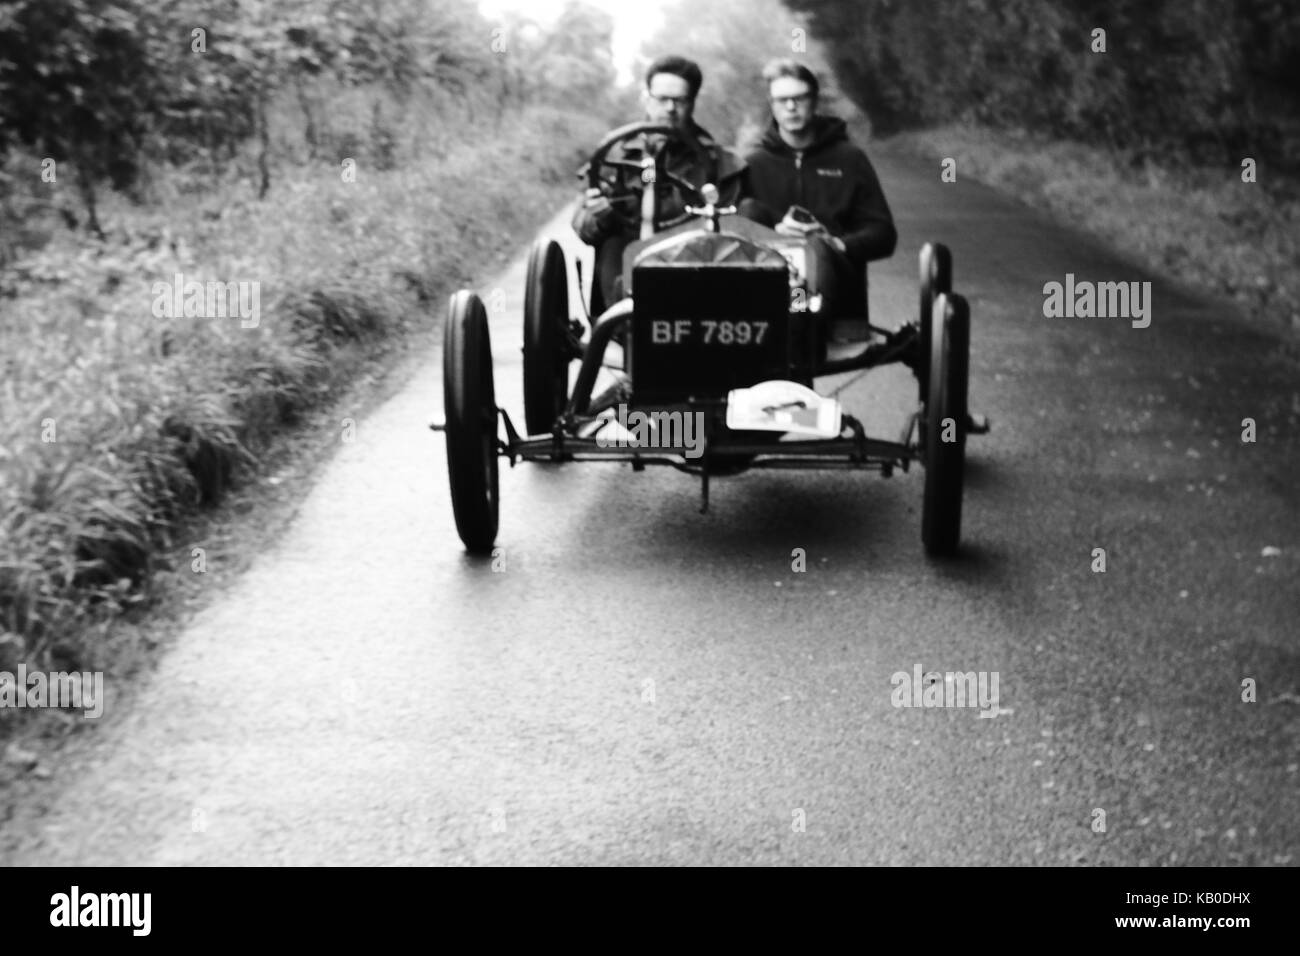 Vintage racing car - Kop Hill Climb Stock Photo